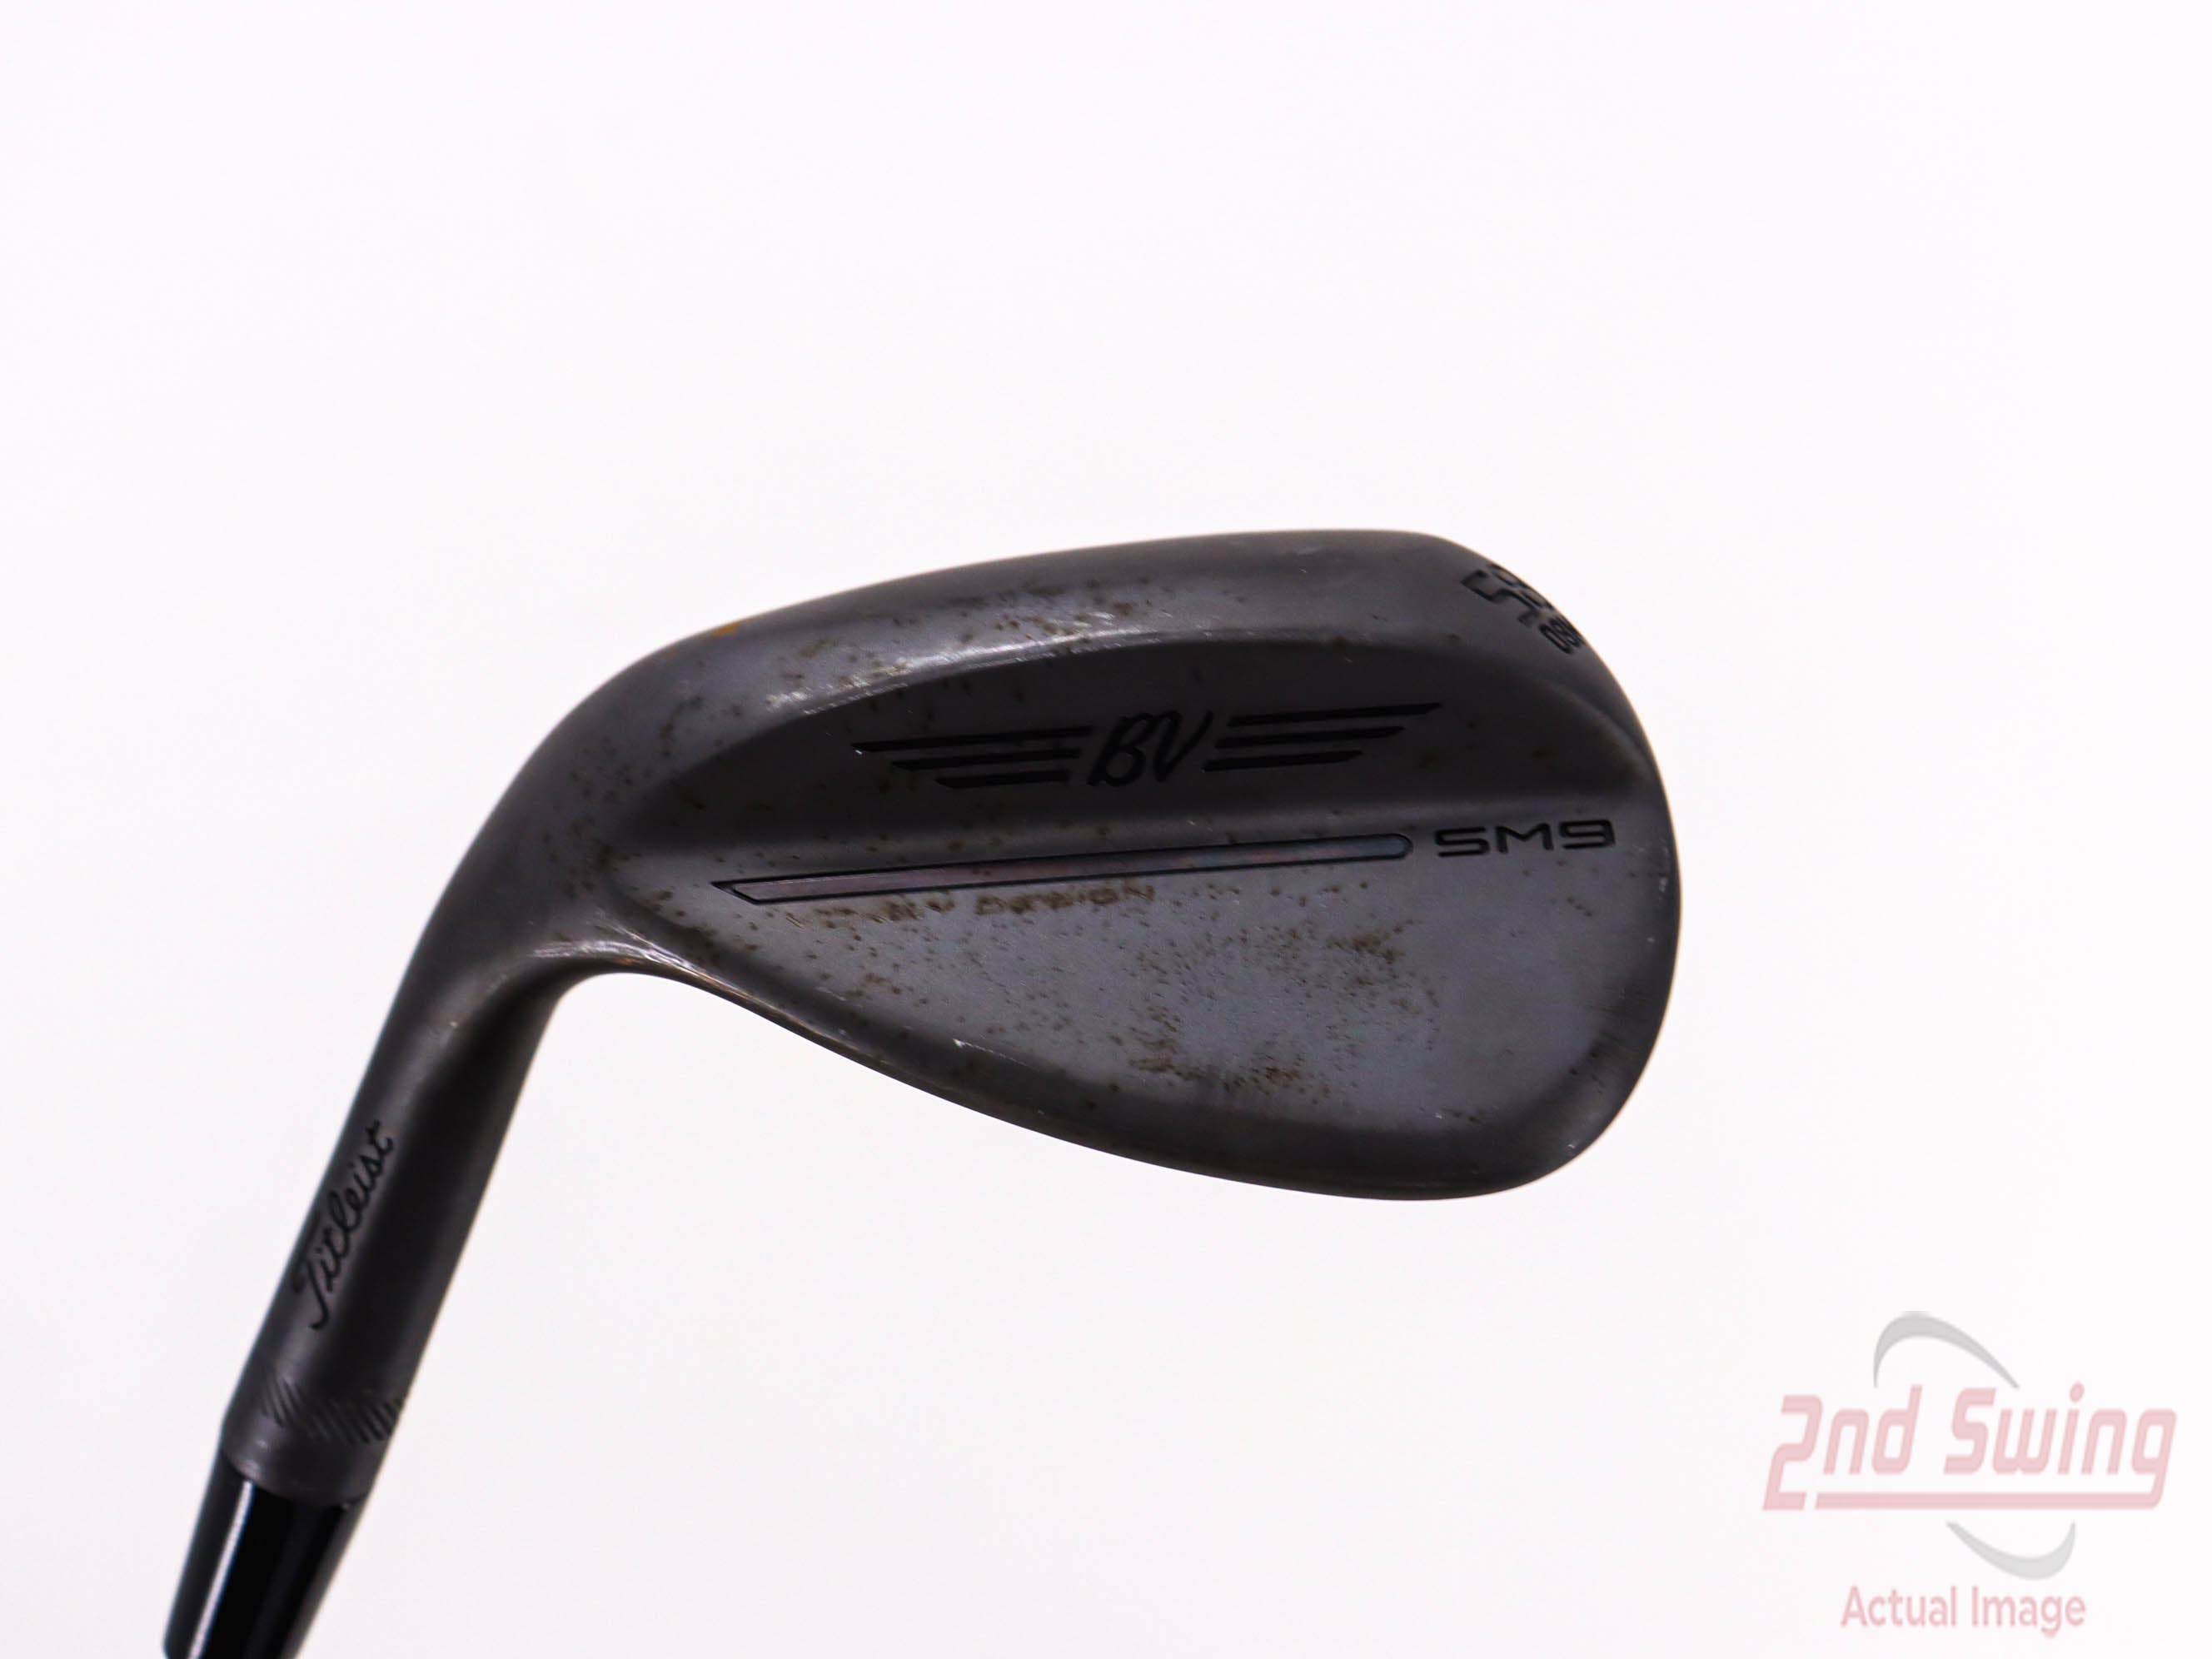 Titleist Vokey SM9 Jet Black Wedge | 2nd Swing Golf